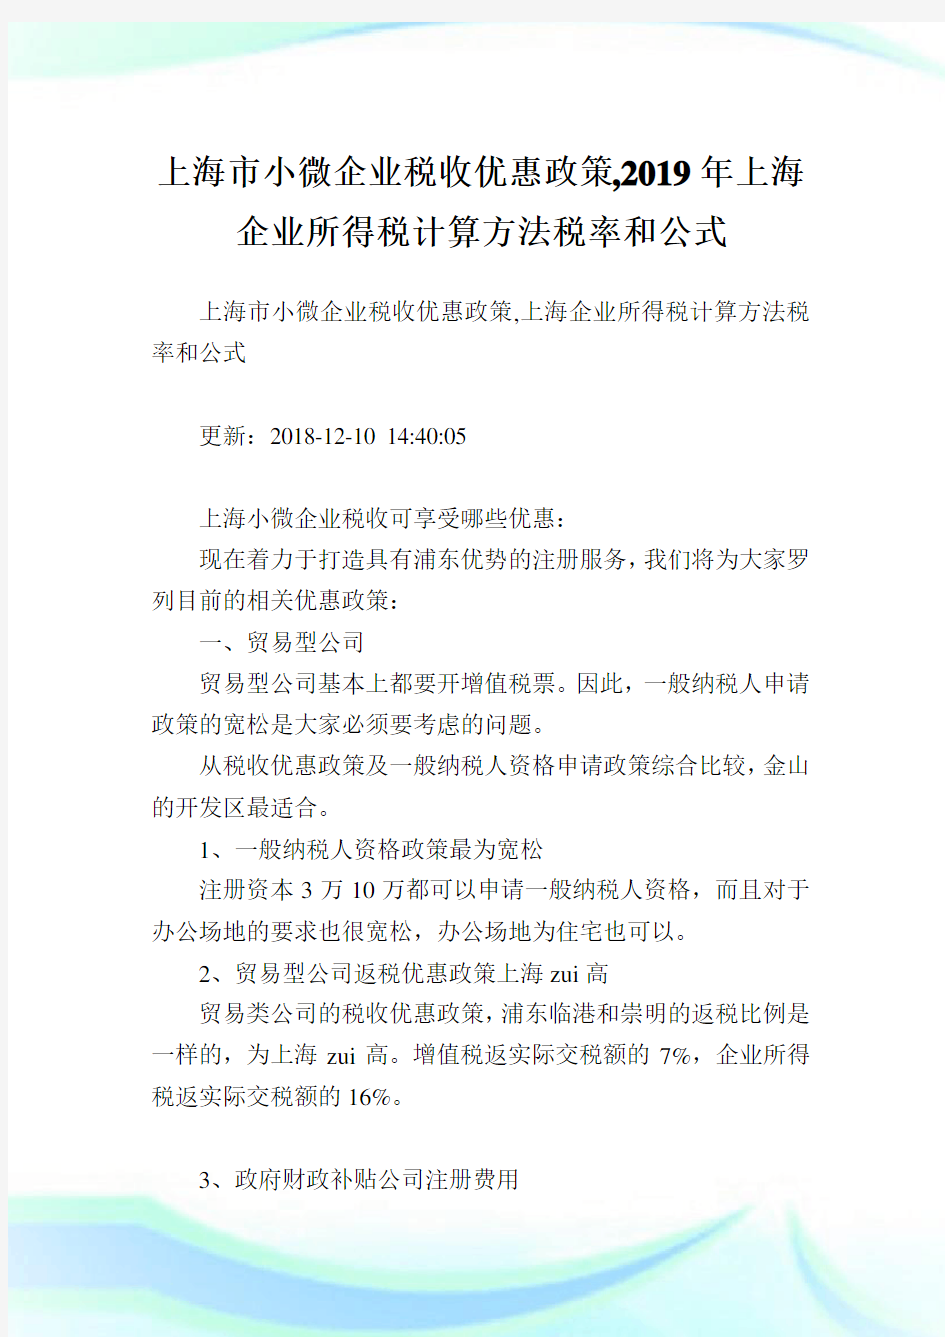 上海市小微企业税收优惠政策,2019年上海企业所得税计算方法税率和公式.doc